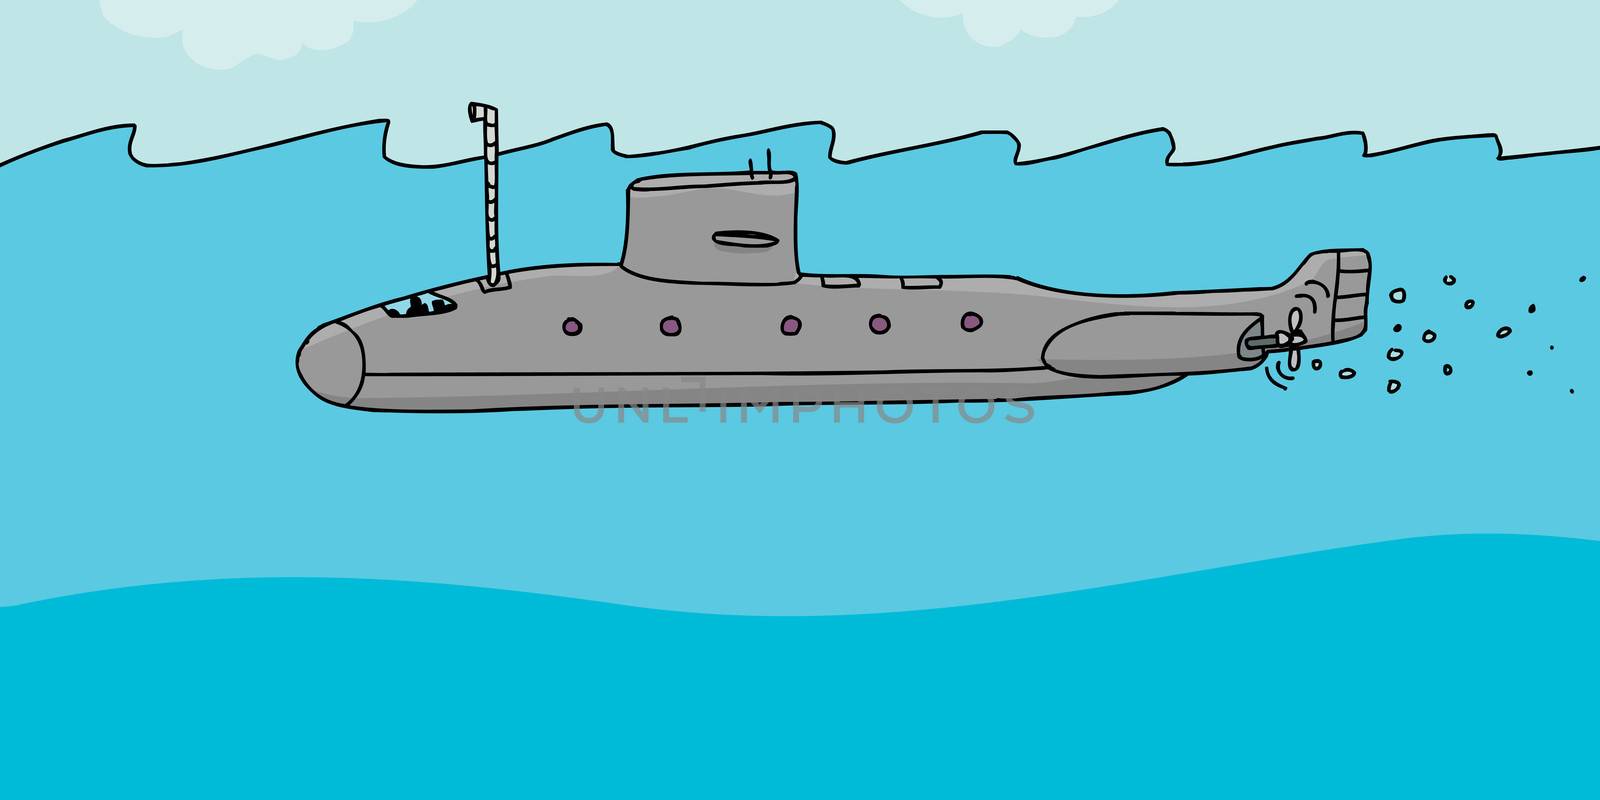 Submarine Cartoon by TheBlackRhino